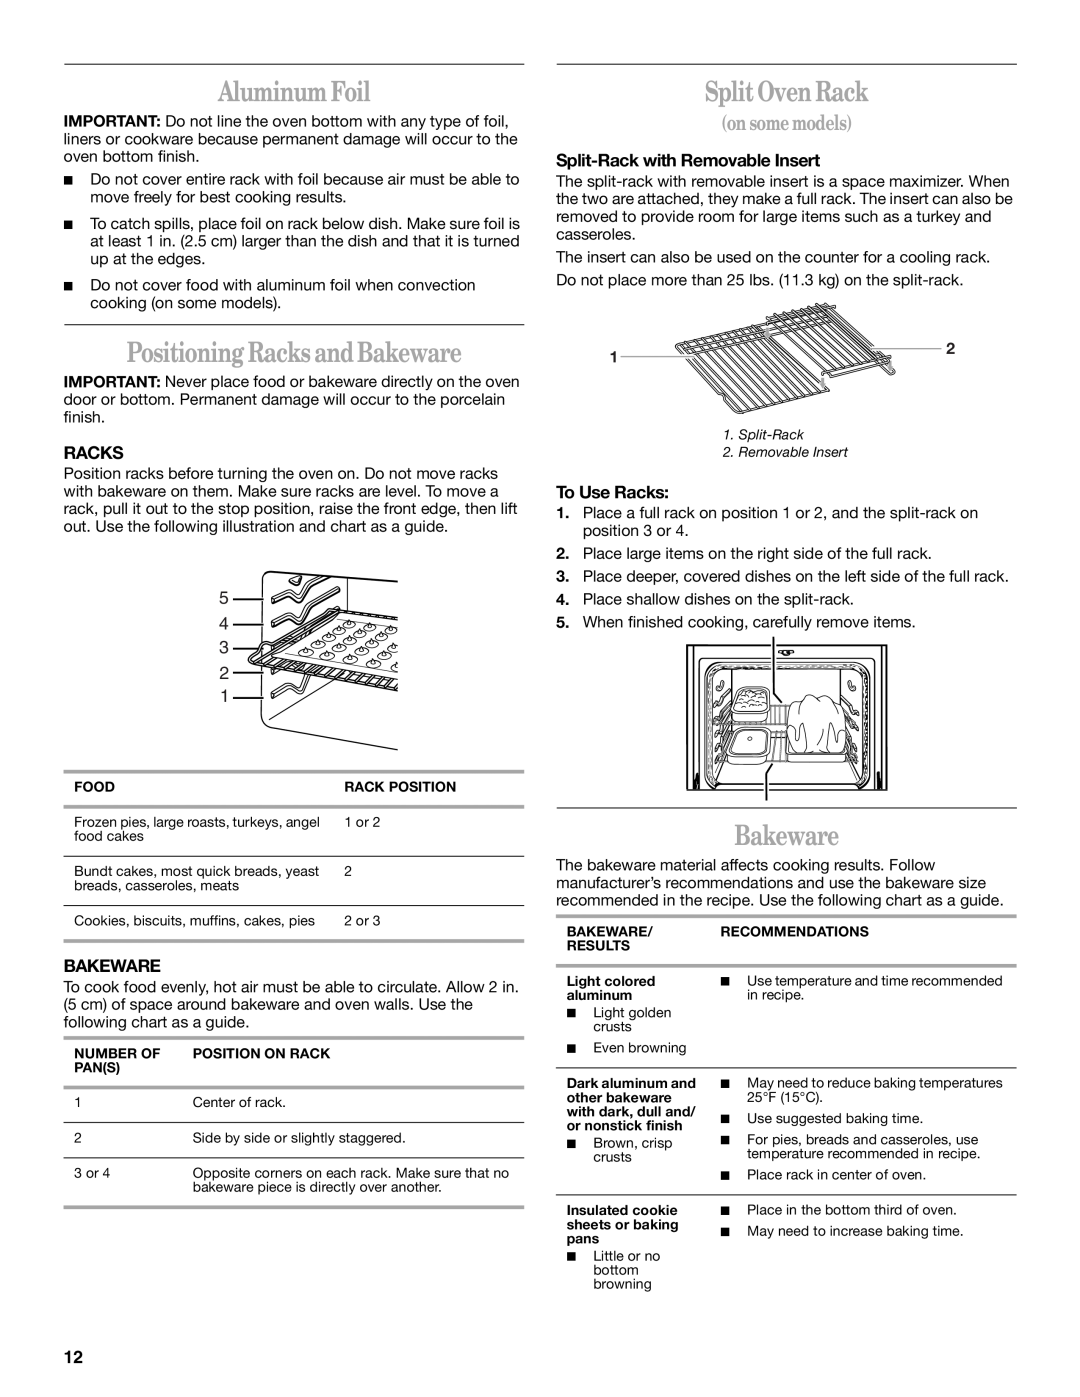 Whirlpool 9754384 manual Aluminum Foil, Positioning Racks and Bakeware, Split Oven Rack, Split-Rack with Removable Insert 